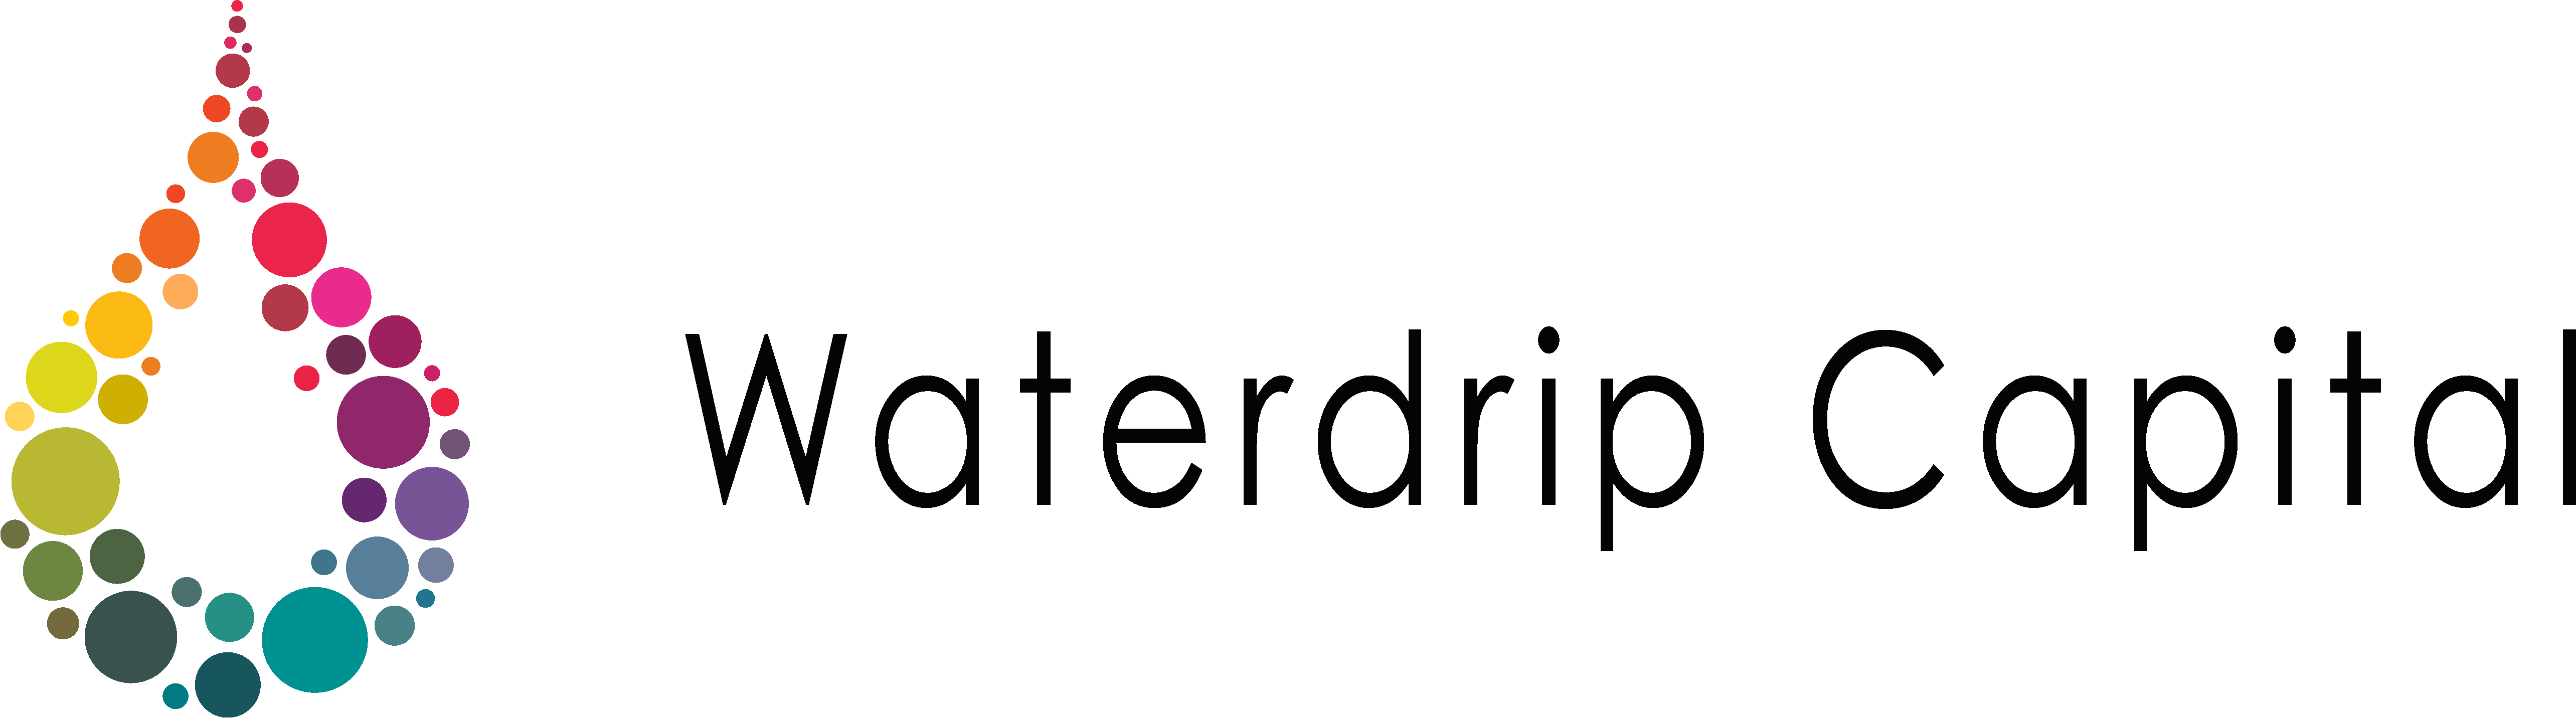 Waterdrip Capital | Lead investor